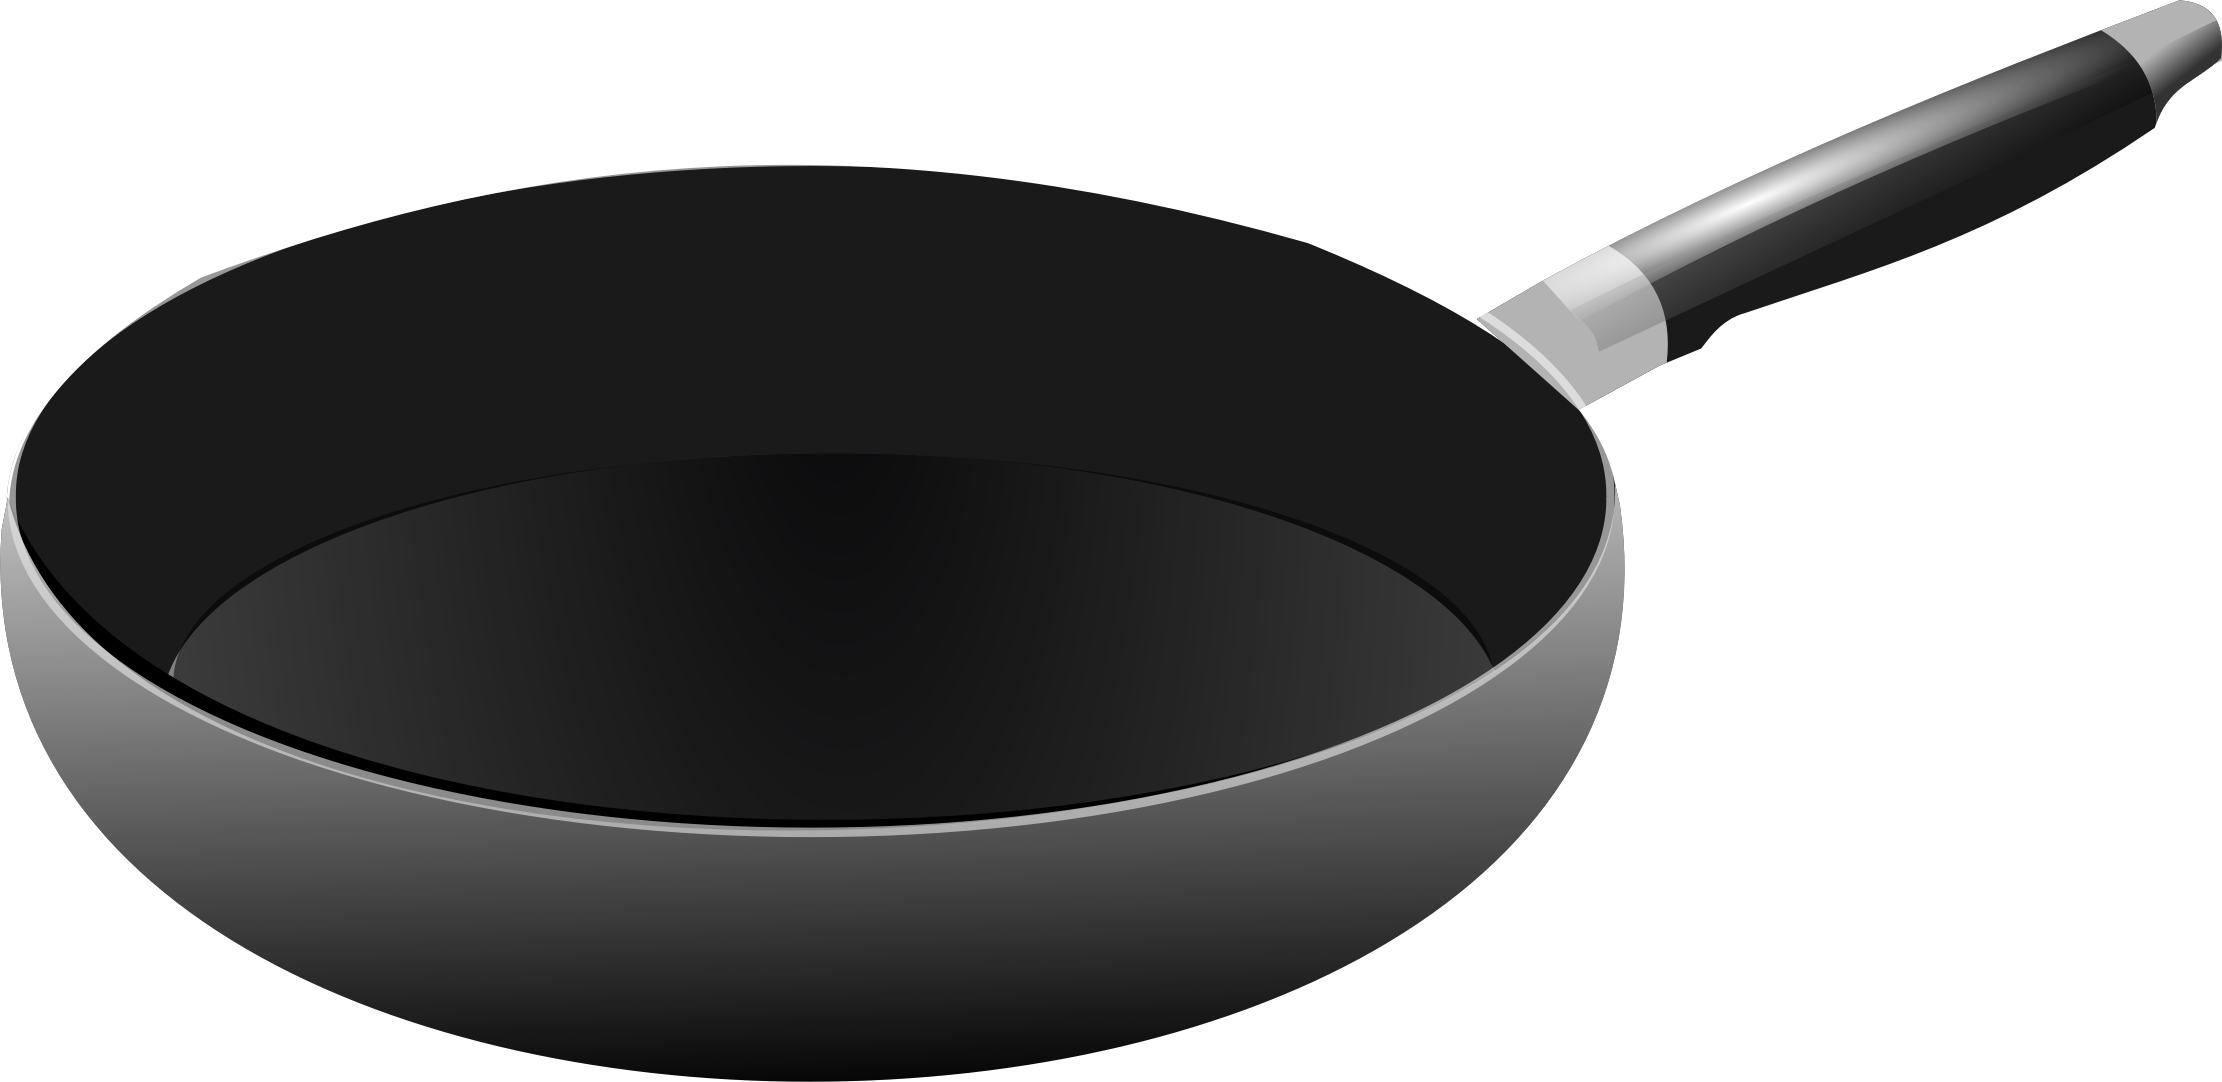 Cooking pan PNG image - Cooki